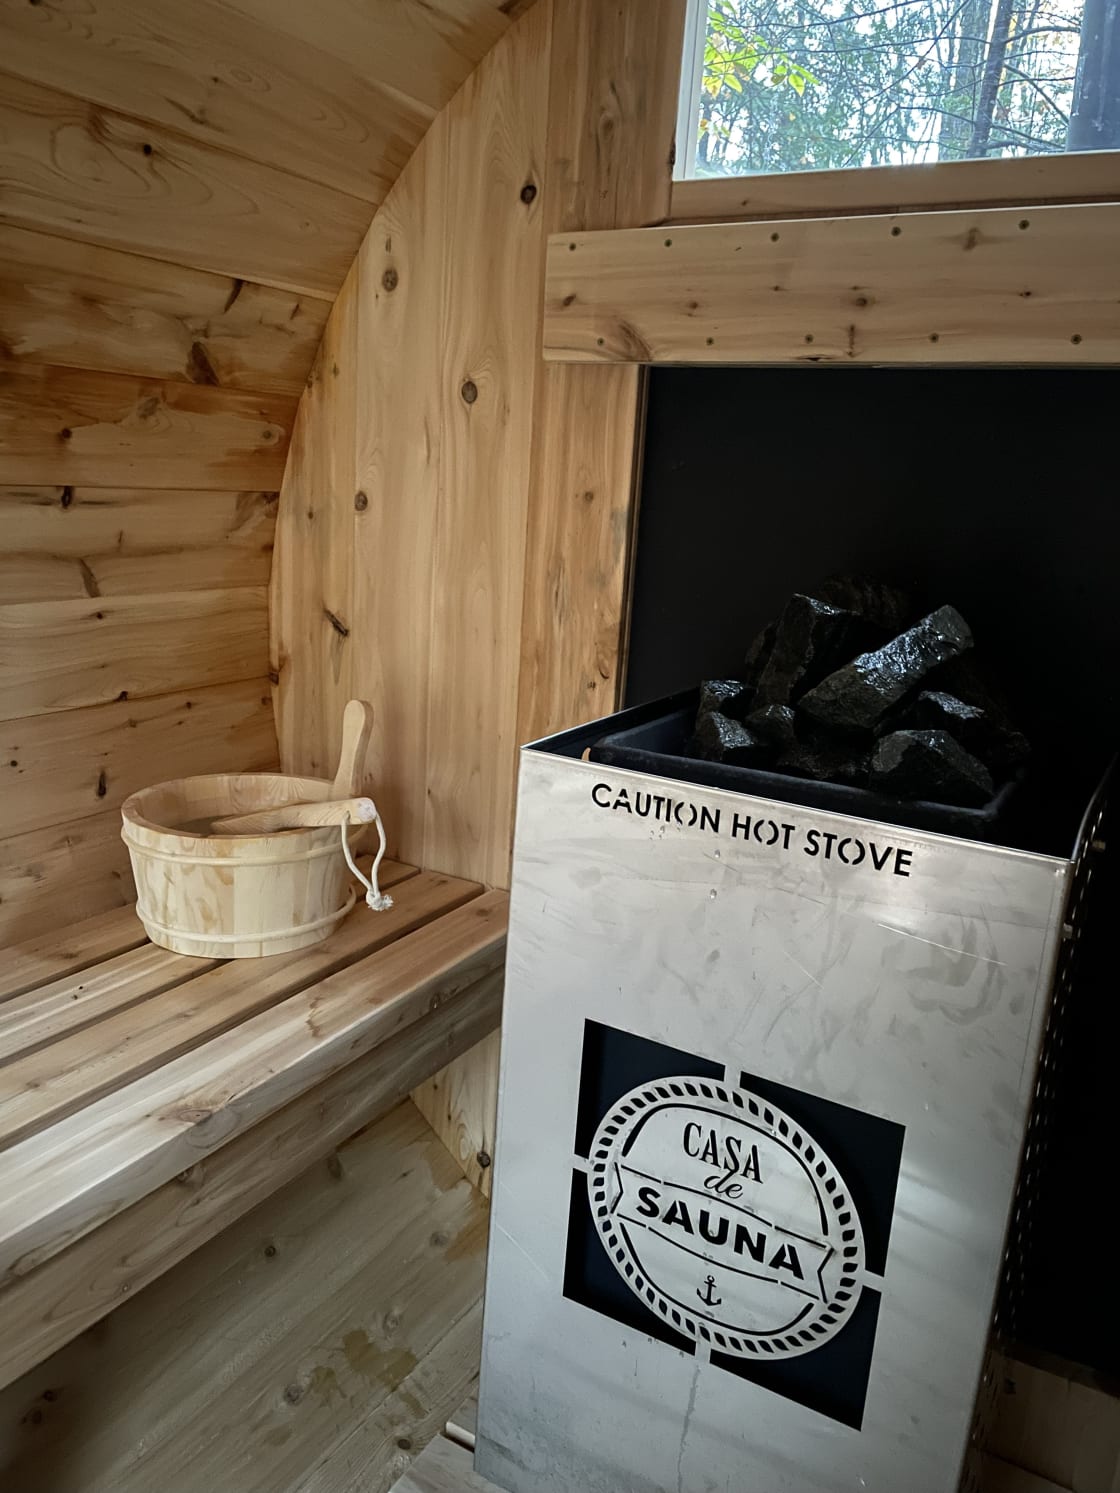 Sauna (open year round, shared)